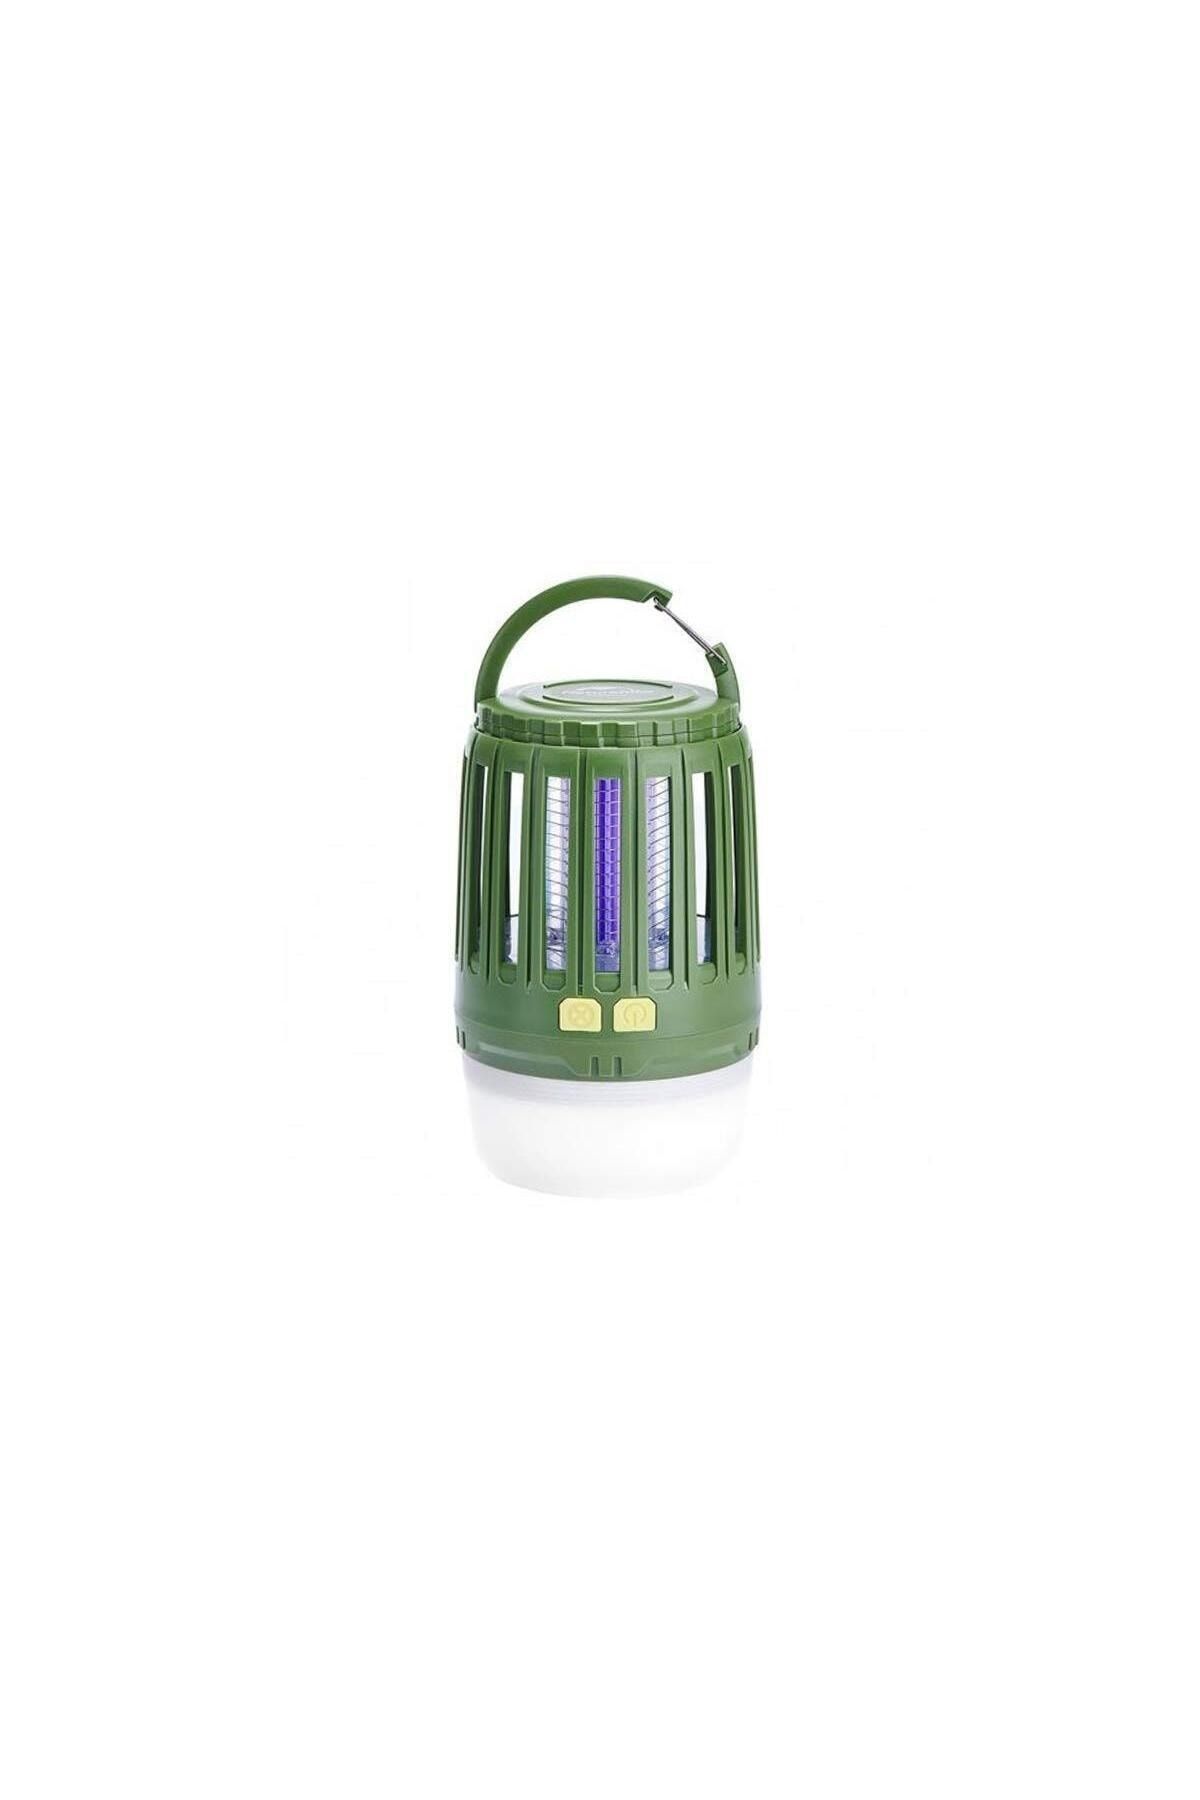 Naturehike Multi-Fonksiyonel Sivrisinek Kovucu & LED Kamp Lambası-Yeşil